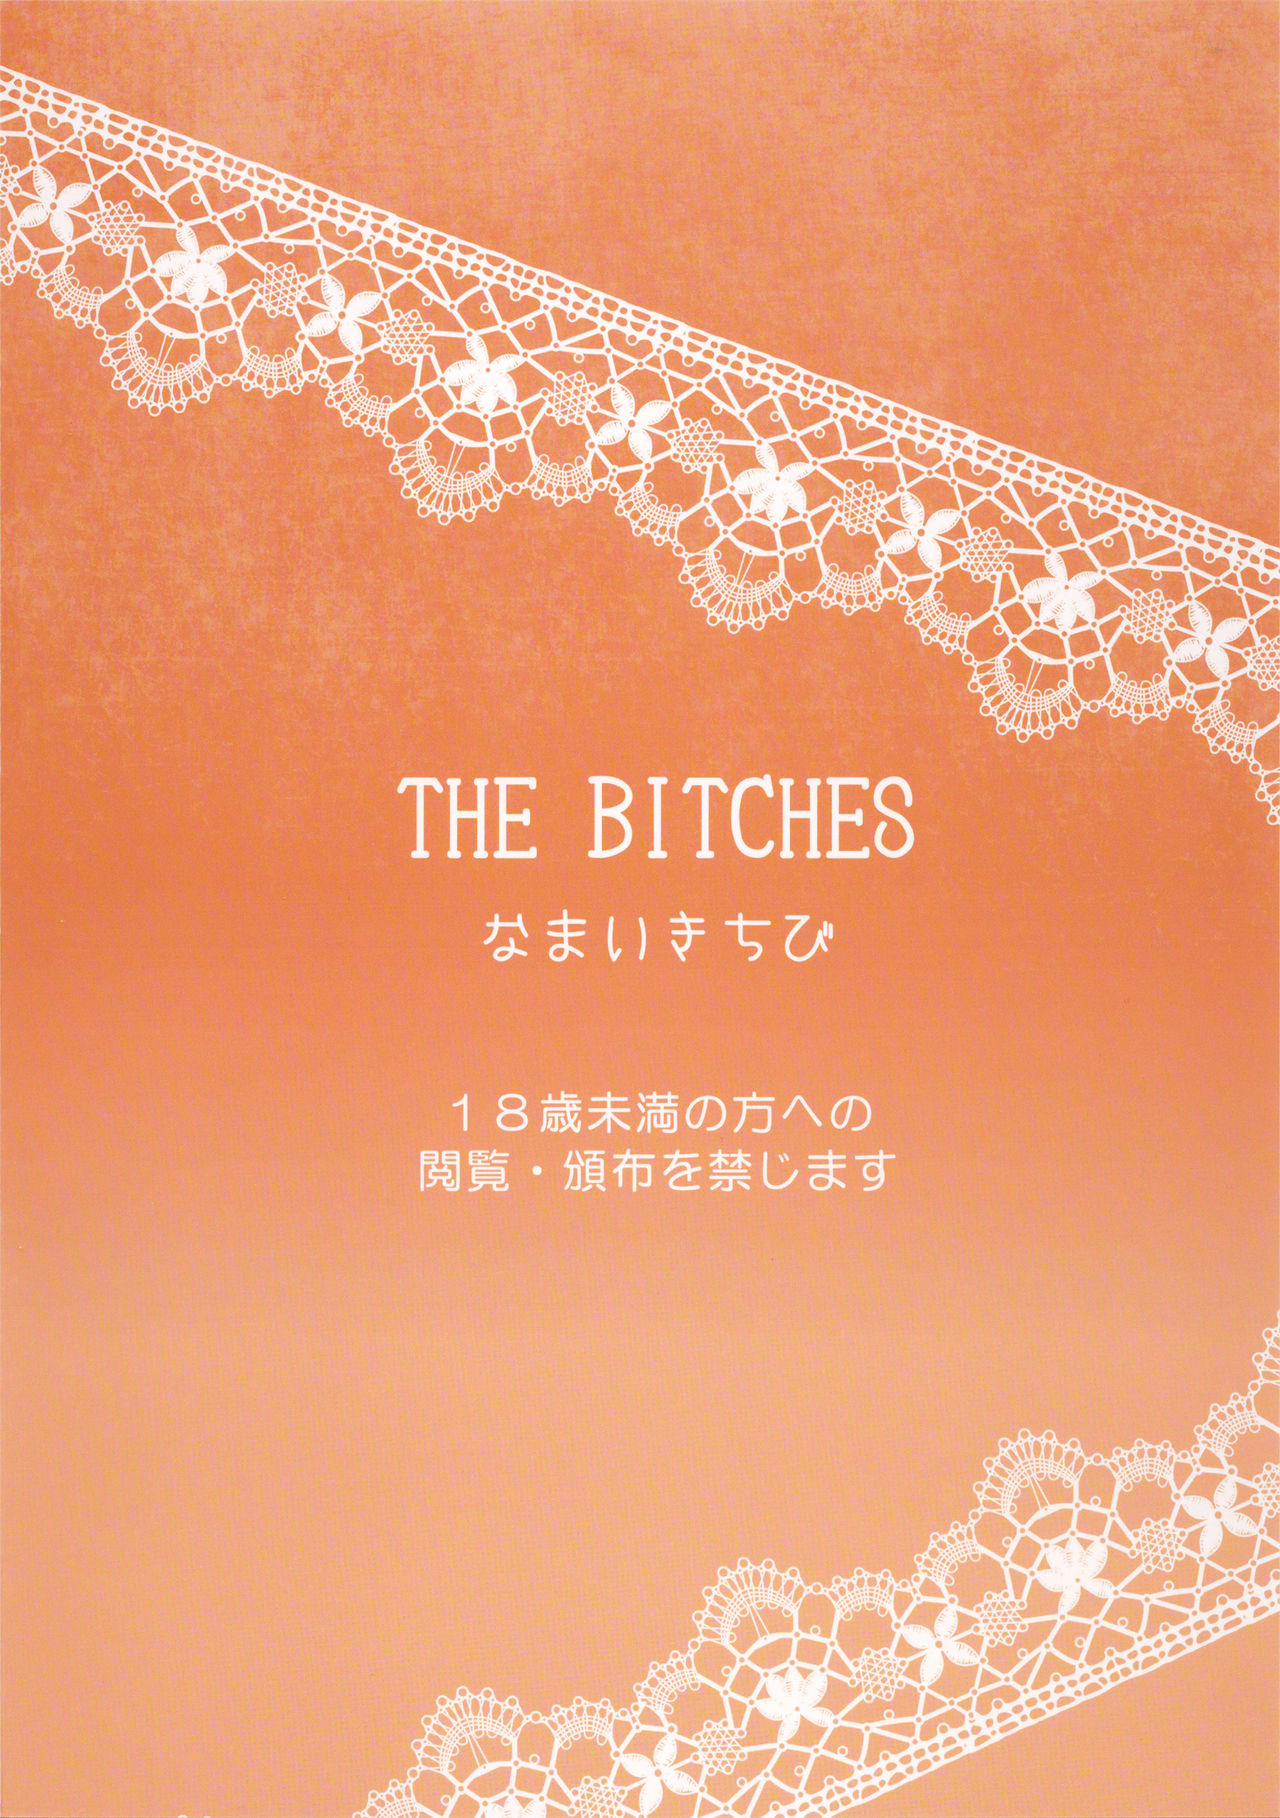 [Namaikichibi (Yuchi, Kyoukei)] THE BITCHES [2015-10-16] [なまいきちび (ゆち、狂鶏)] THE BITCHES [2015年10月16日]